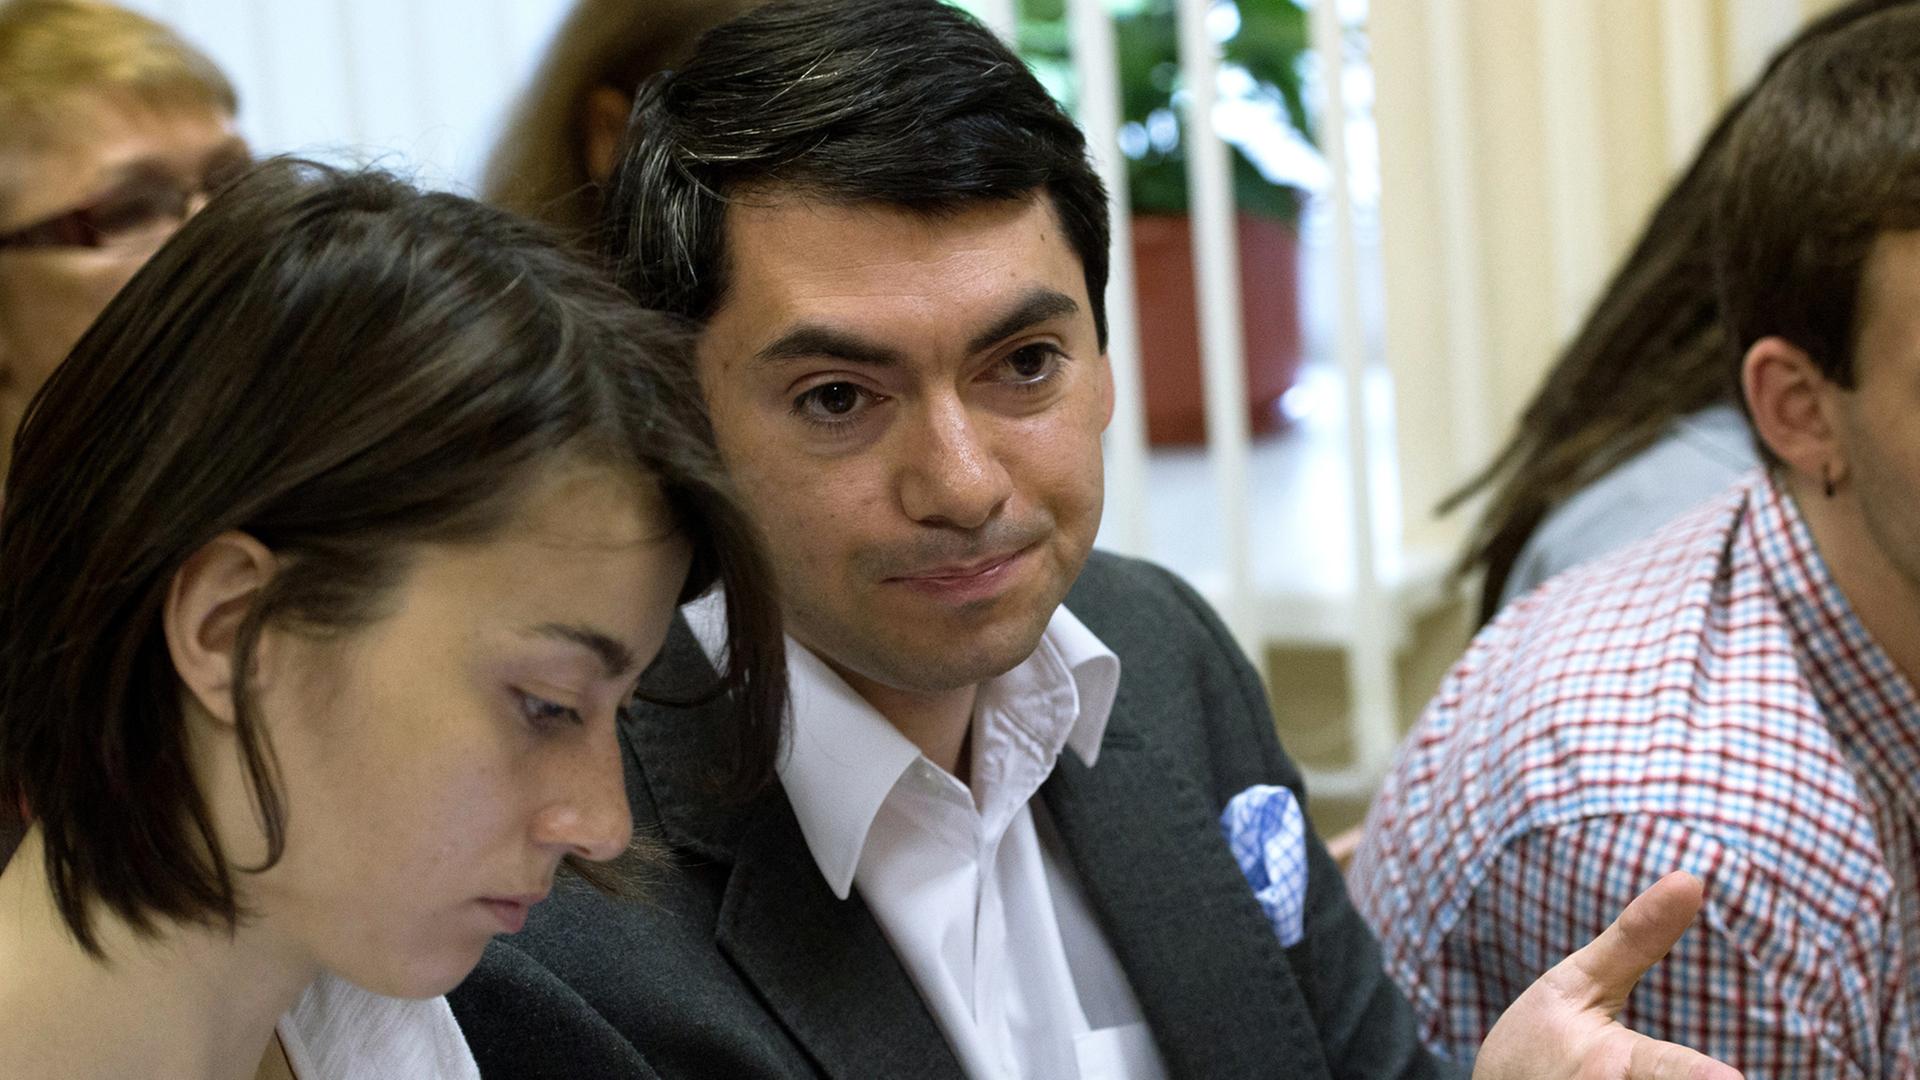 Grigorij Melkonjants, Leiter der NGO "Golos" in Russland, sitzt neben einer Frau, gestikuliert mit einer Hand